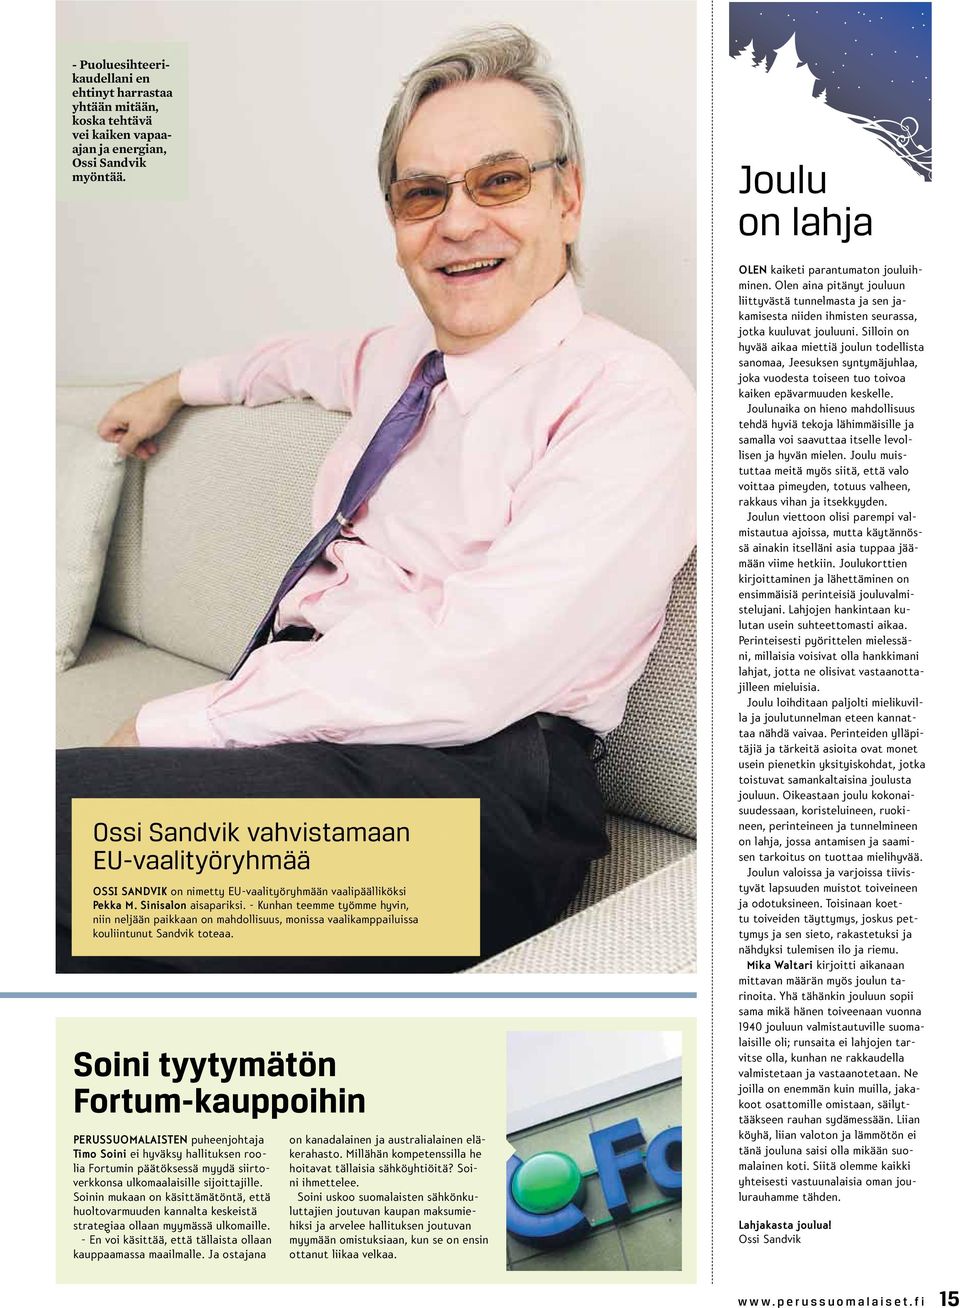 Ossi Sandvik vahvistamaan EU-vaalityöryhmää Ossi Sandvik on nimetty EU-vaalityöryhmään vaalipäälliköksi Pekka M. Sinisalon aisapariksi.